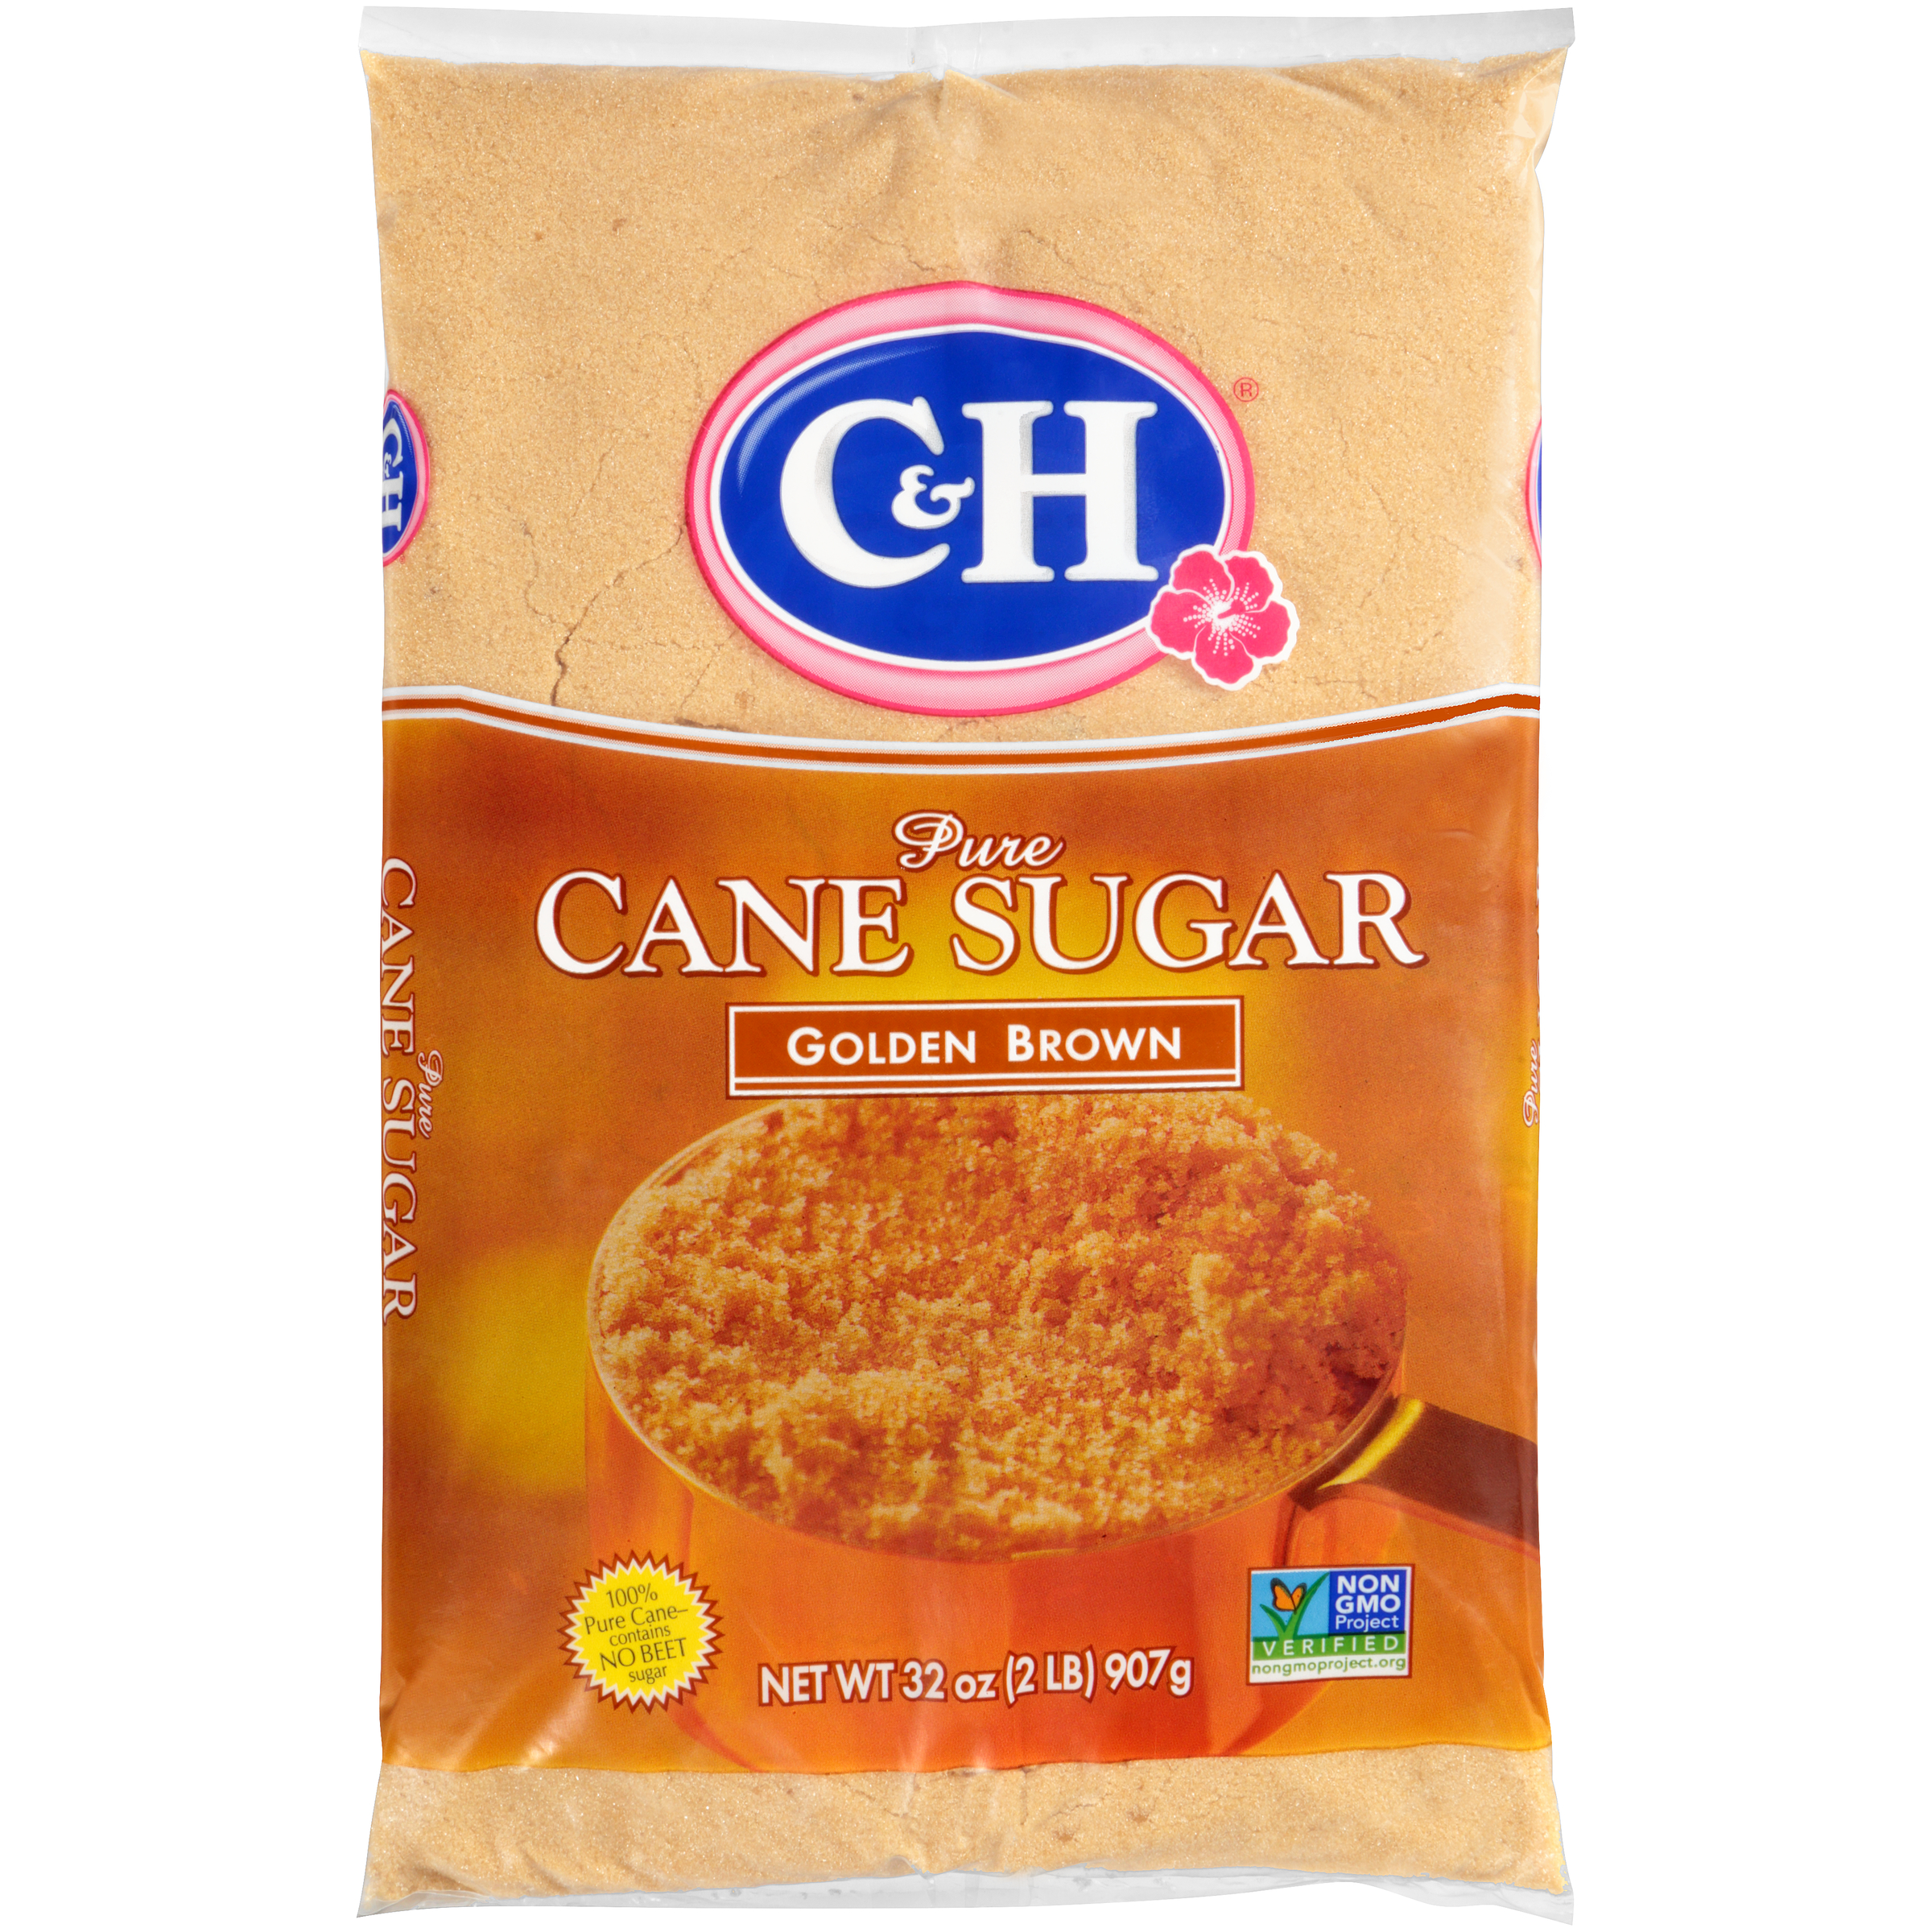 C&H Premium Pure Cane Light Brown Sugar, 2 lb - image 1 of 7